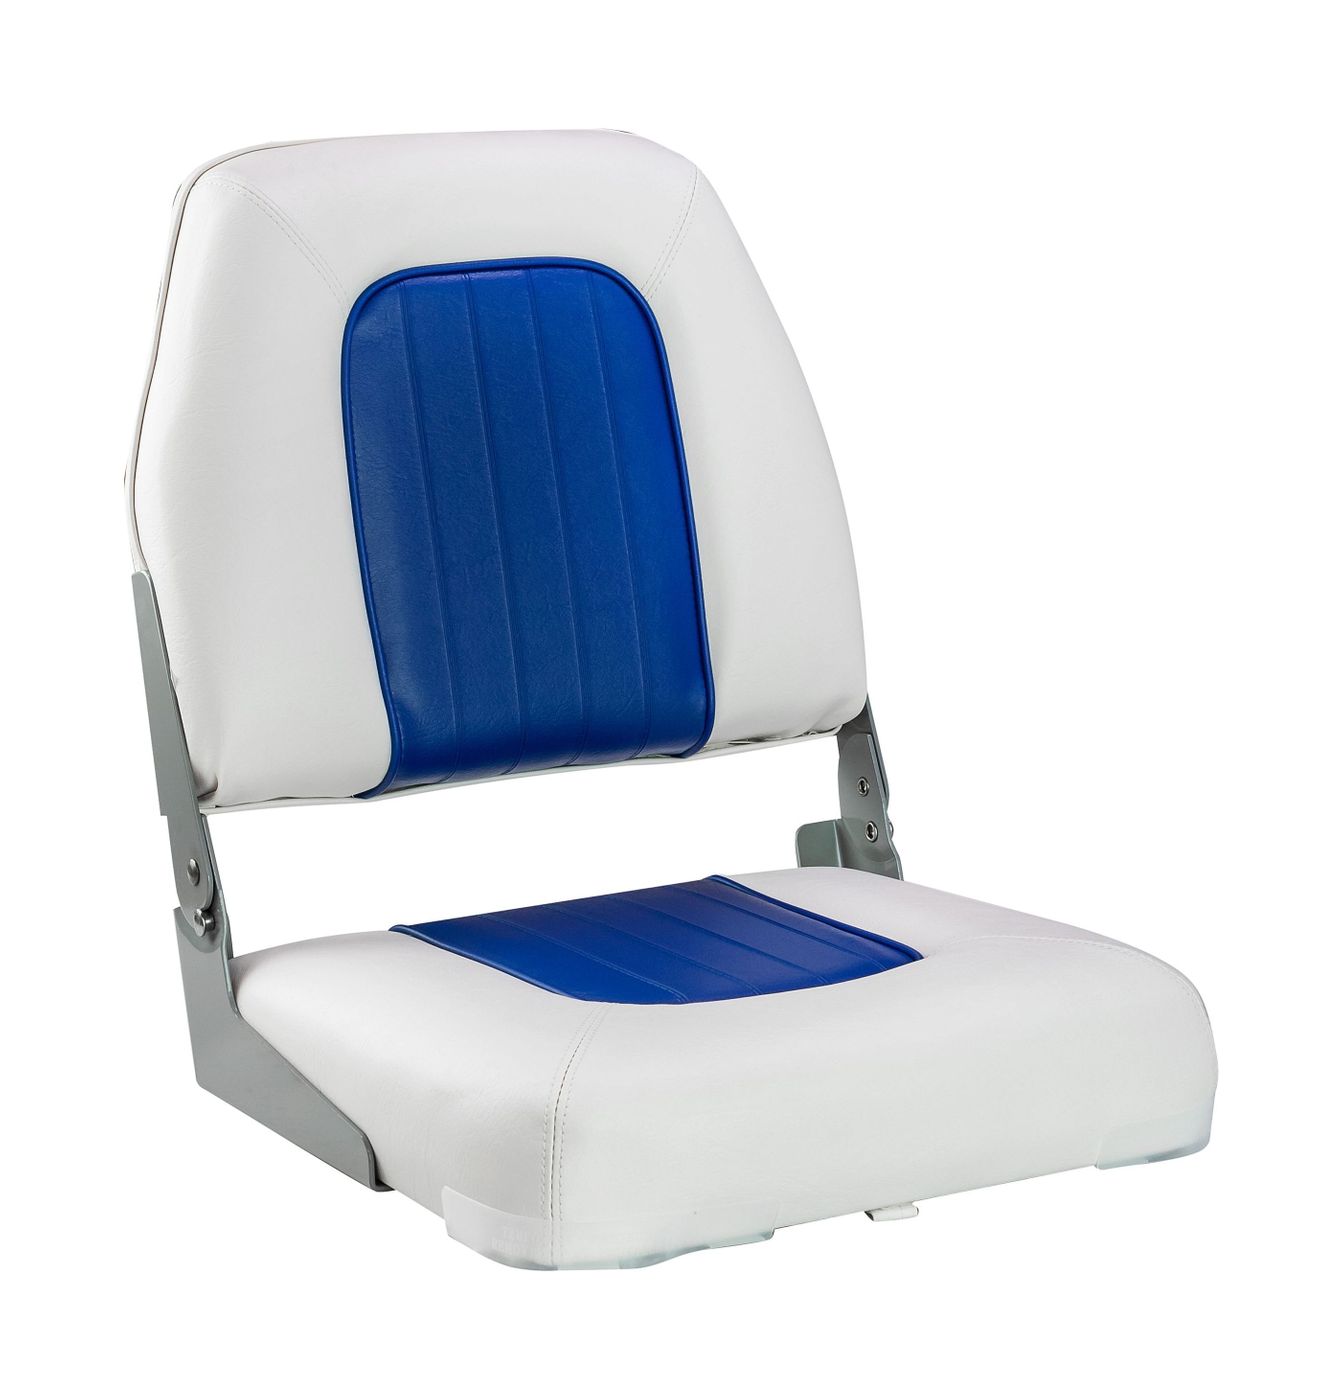 Кресло мягкое складное Deluxe, обивка винил, цвет белый/синий, Marine Rocket 75137WB-MR кресло пластмассовое складное с подложкой deluxe all weather seat белый чёрный 75113wc